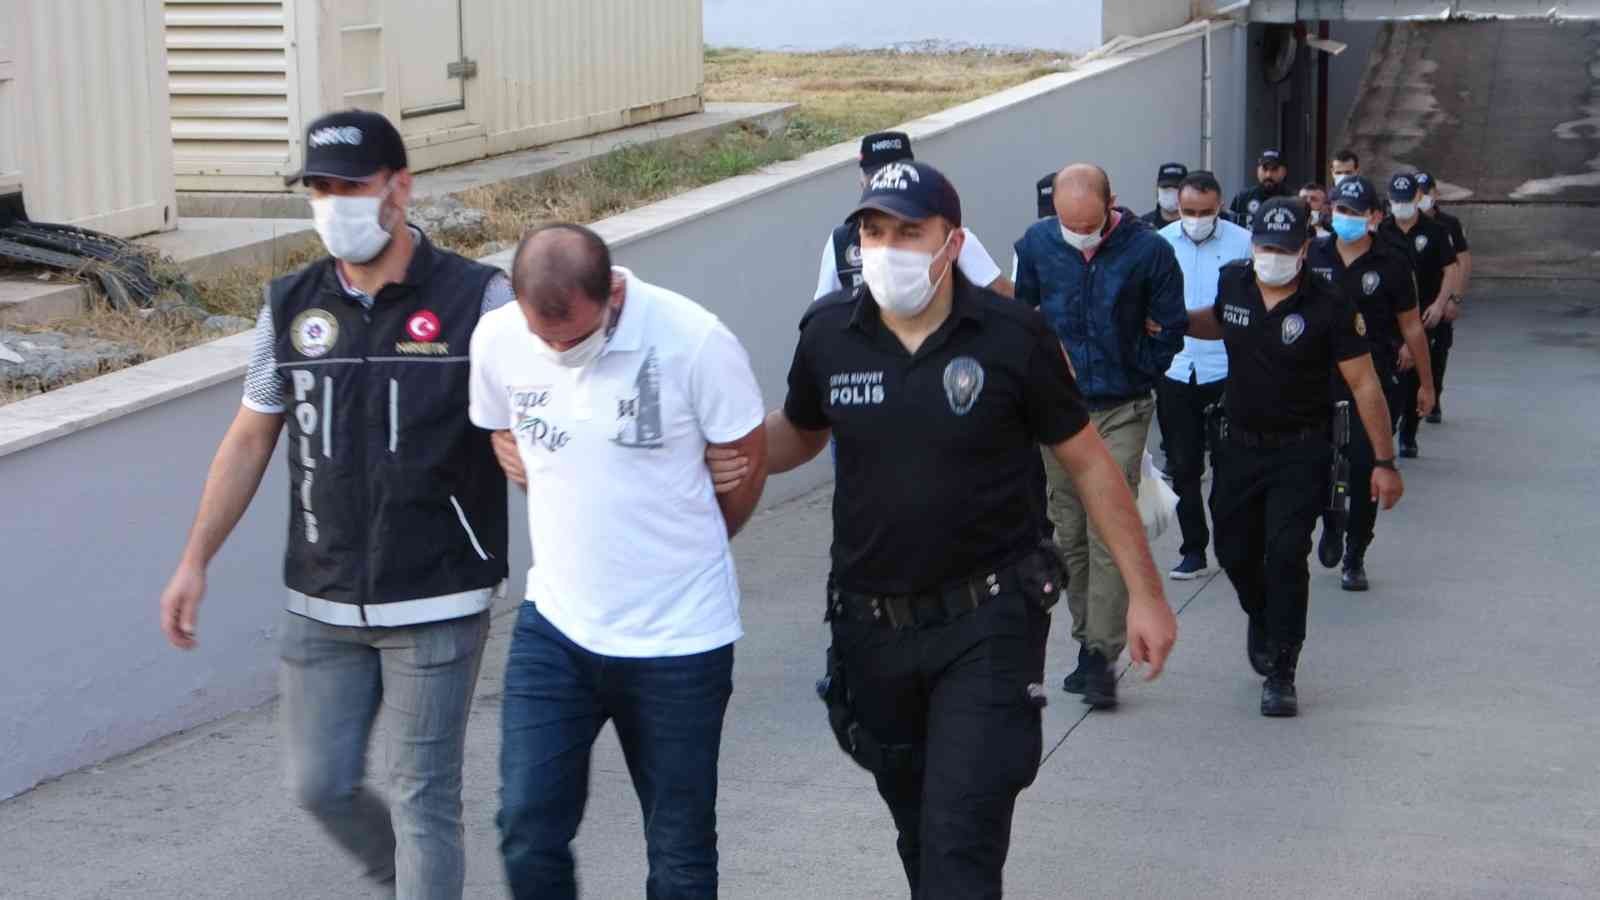 Adana’da torbacılara operasyon: 12 gözaltı #adana